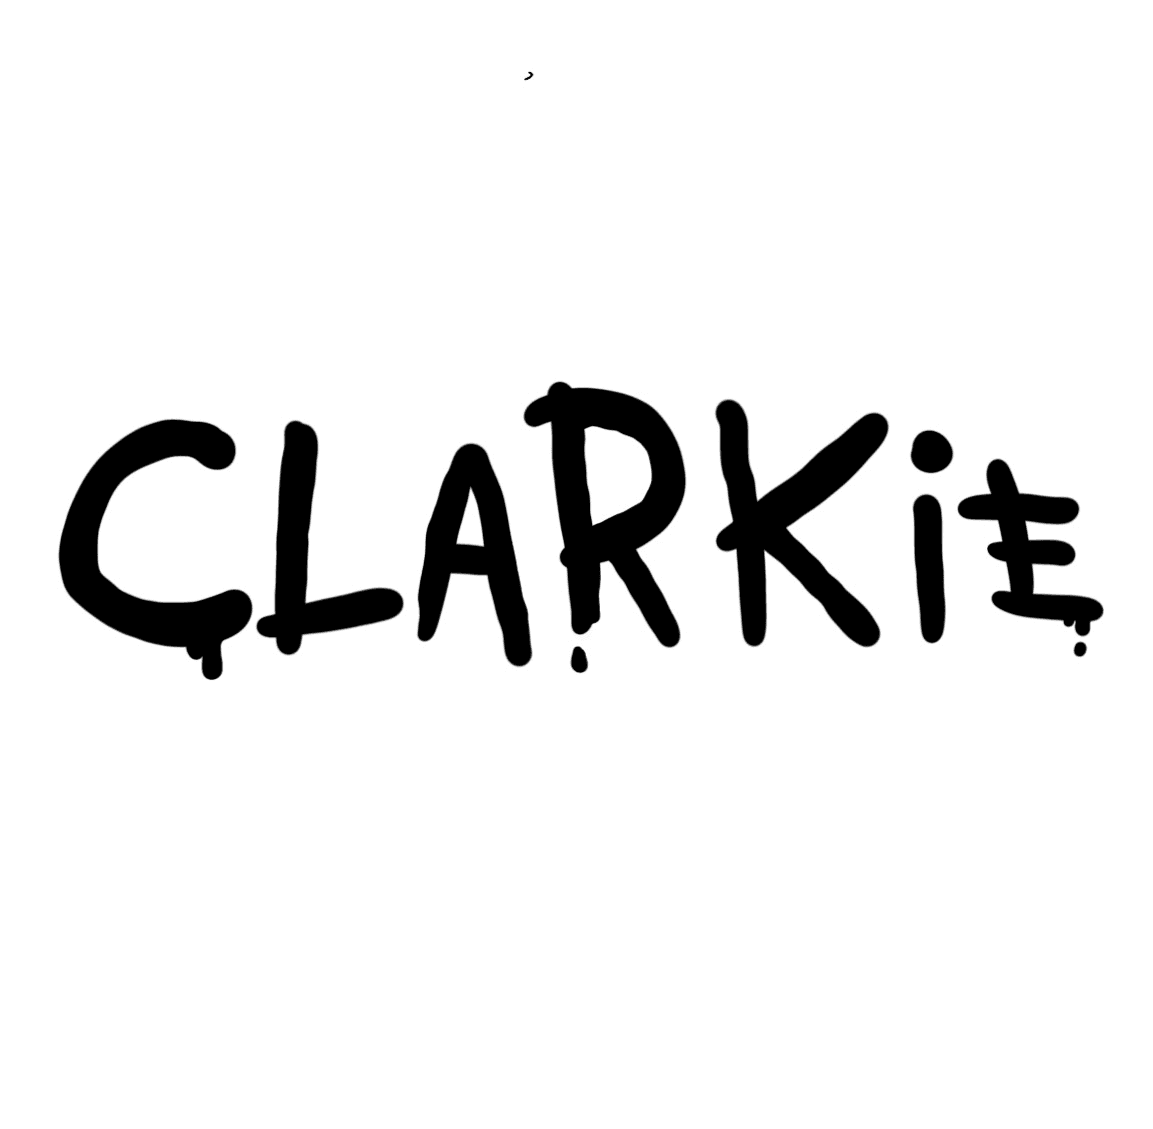 Clarkie